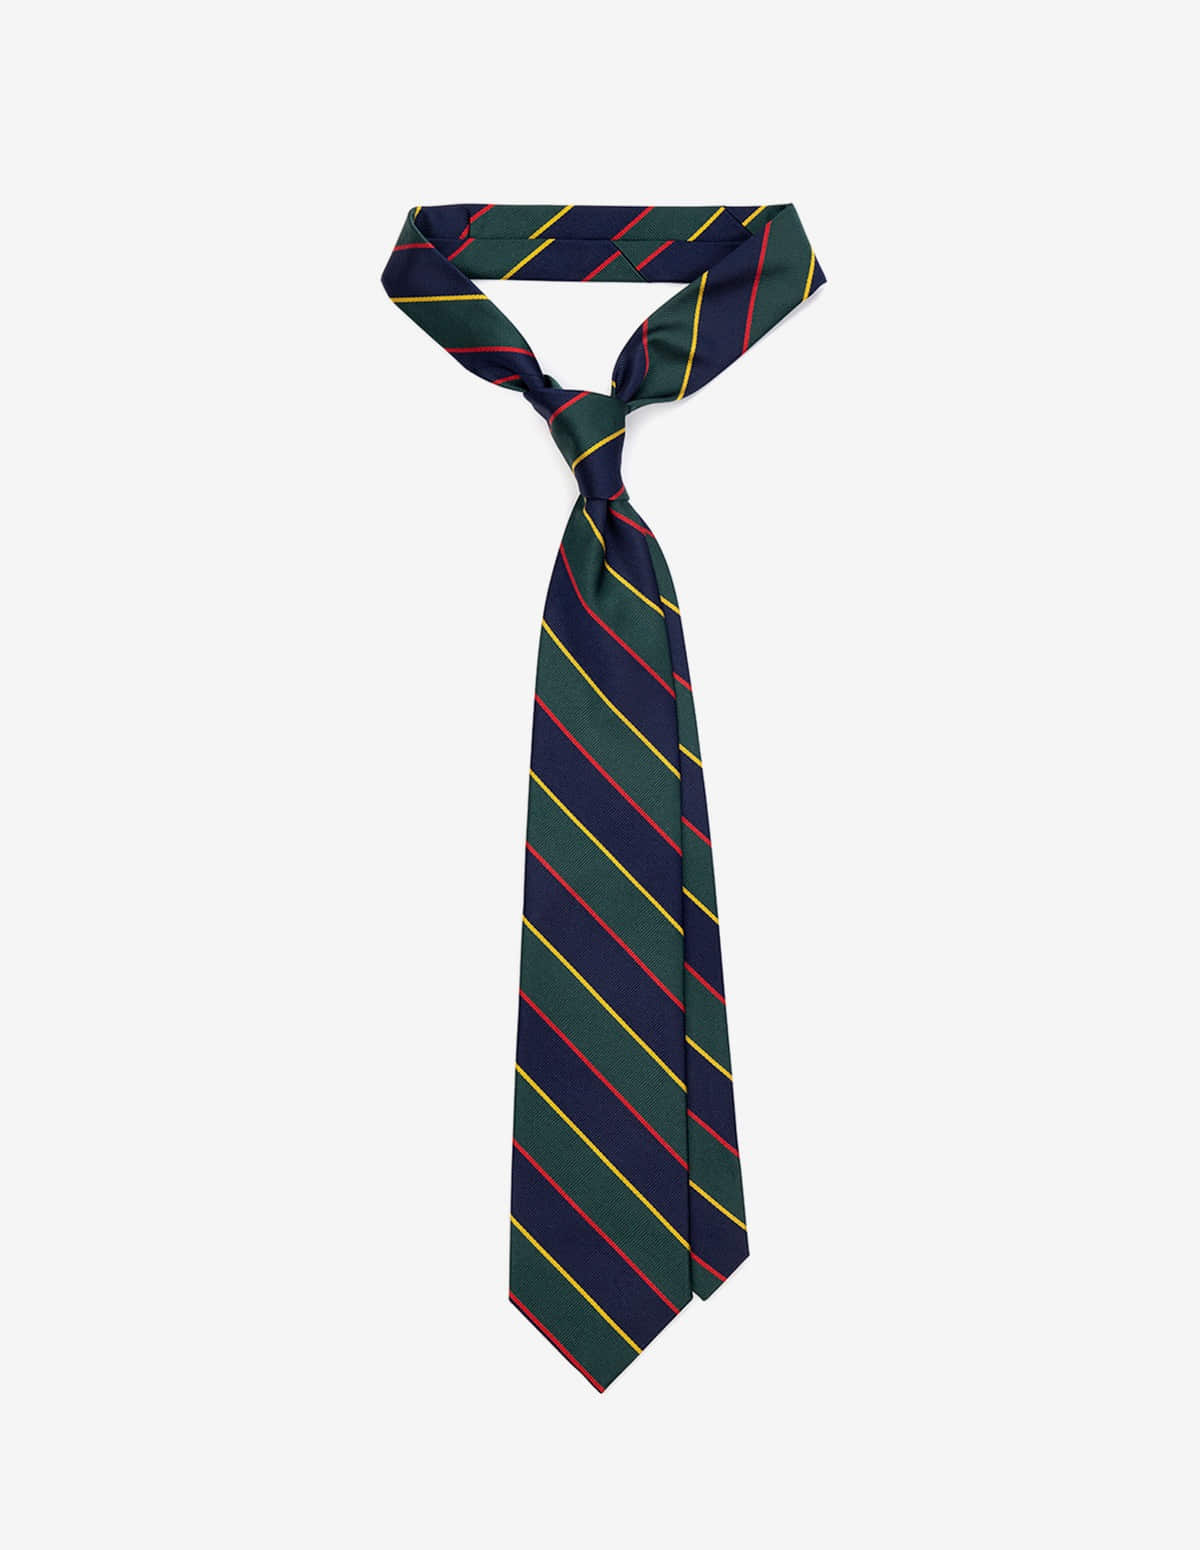 Argyll &amp; Sutherland Tie